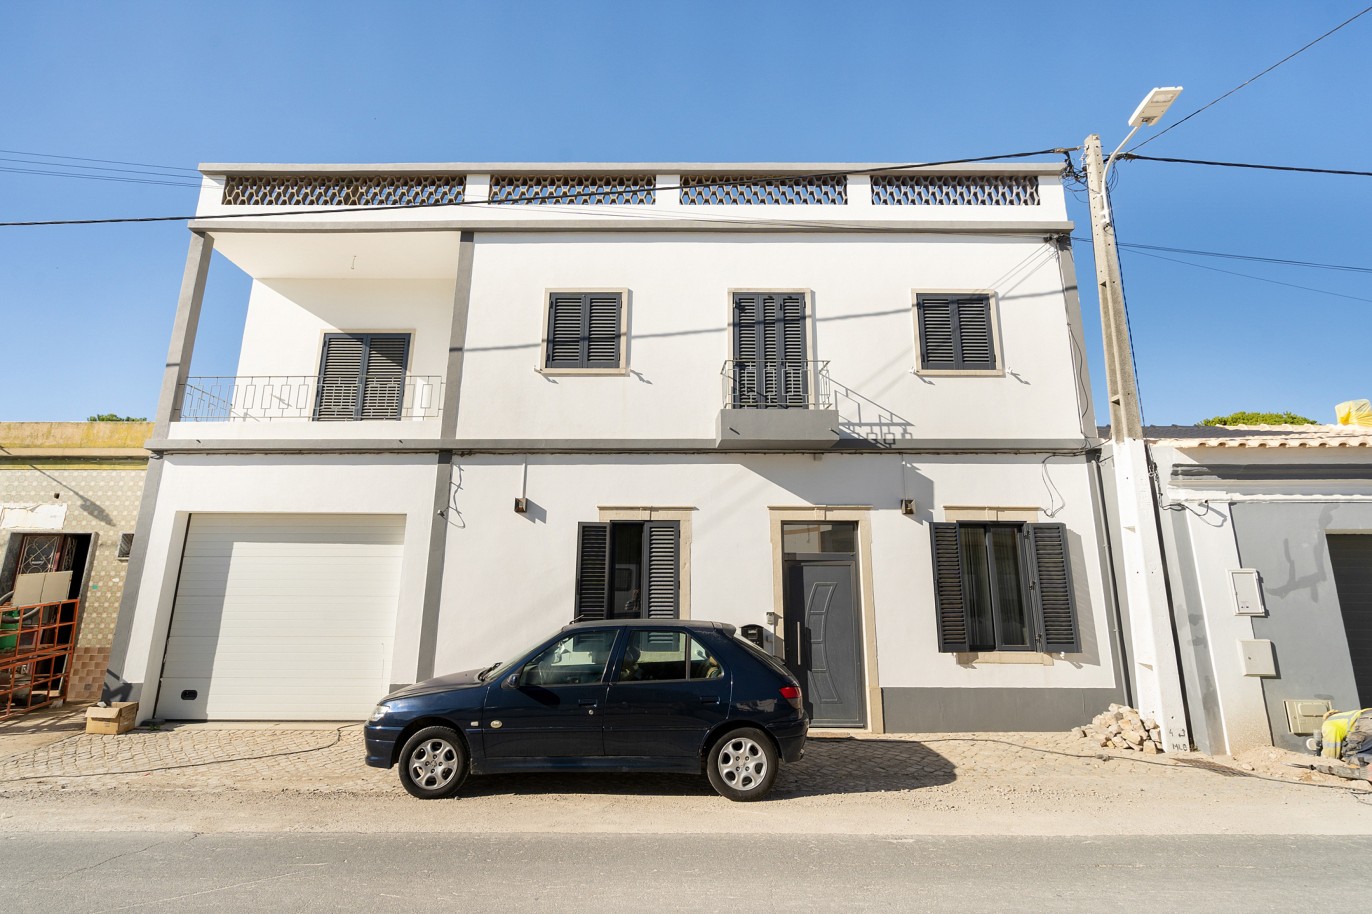 4 Dormitorios Villa Reformada, en venta en São Brás de Alportel, Algarve_219452